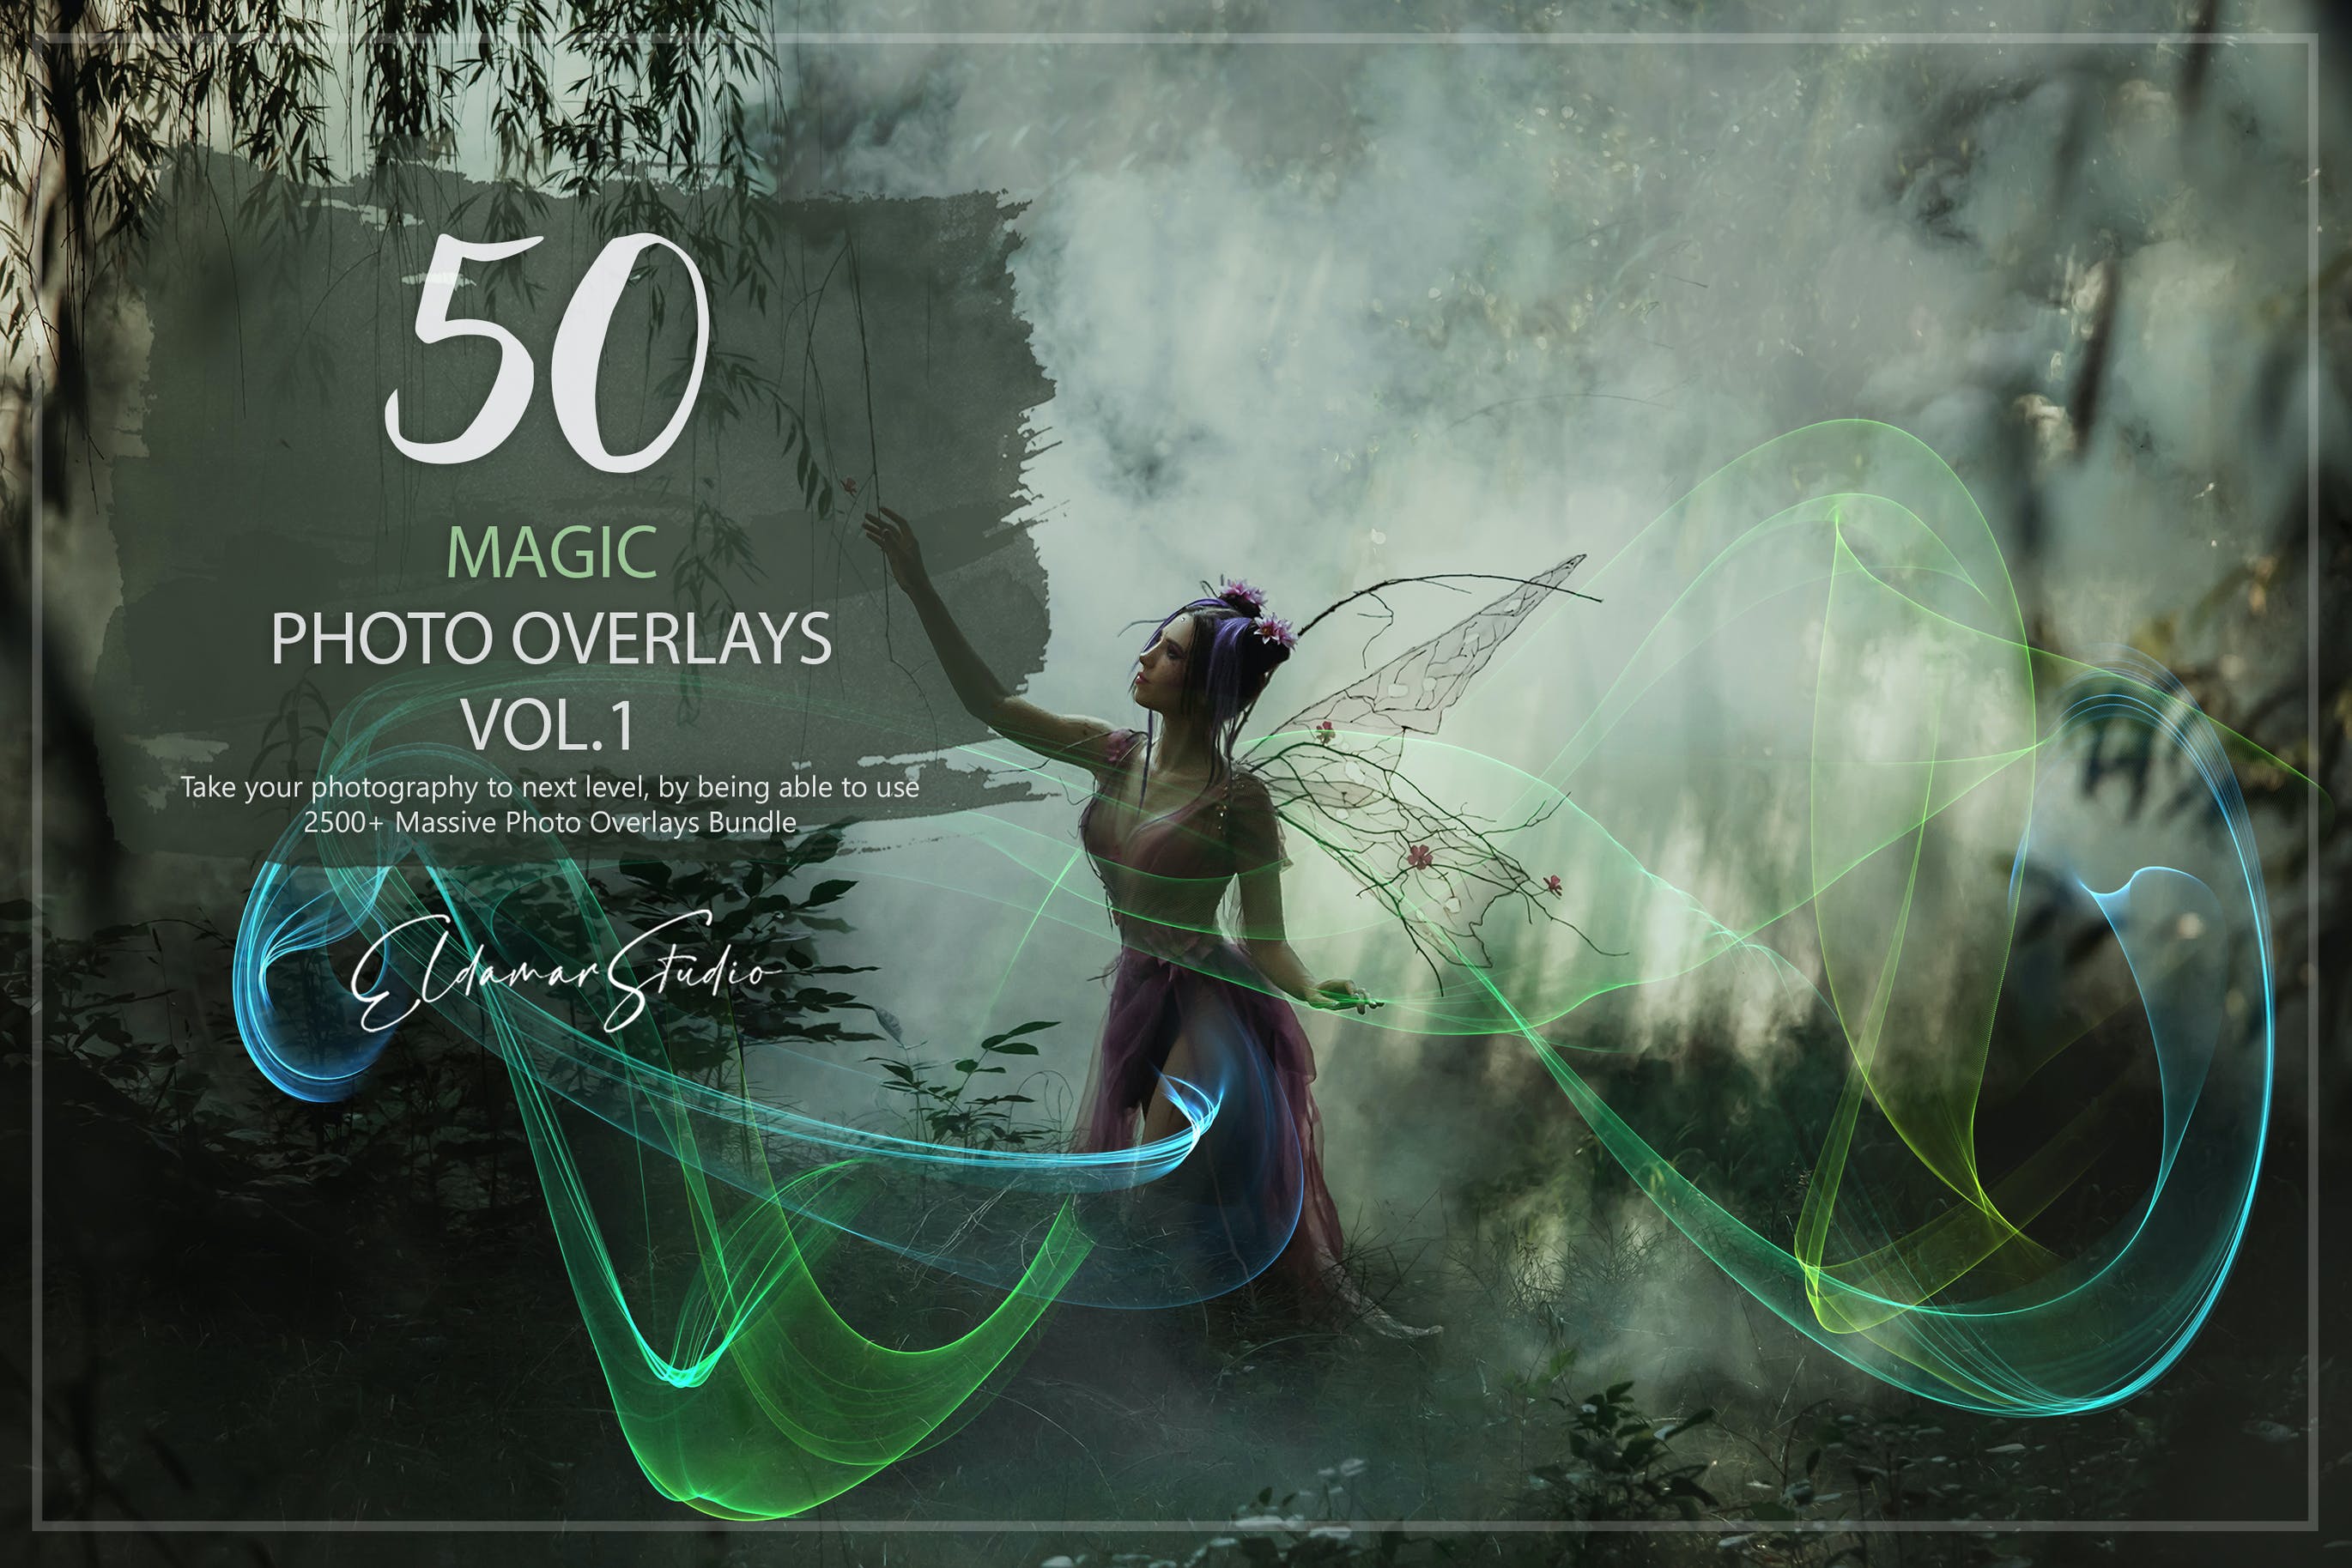 50个魔法彩色波浪线条照片叠层背景素材v1 50 Magic Photo Overlays – Vol. 1 图片素材 第1张